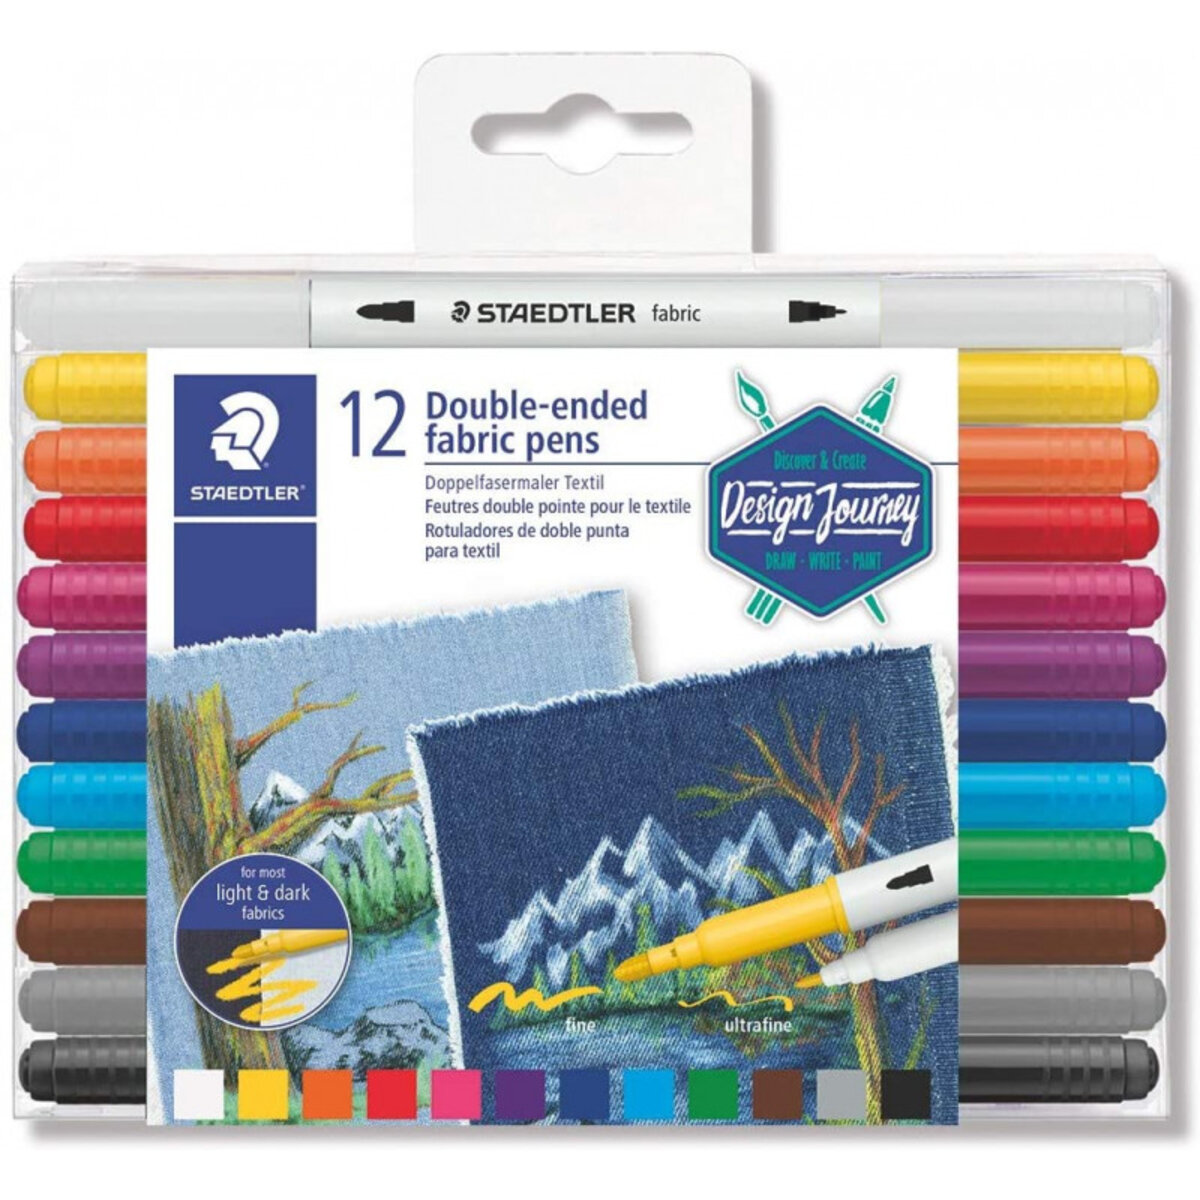 Boîte de 72 crayons feutre de couleur - double pointe - assortis